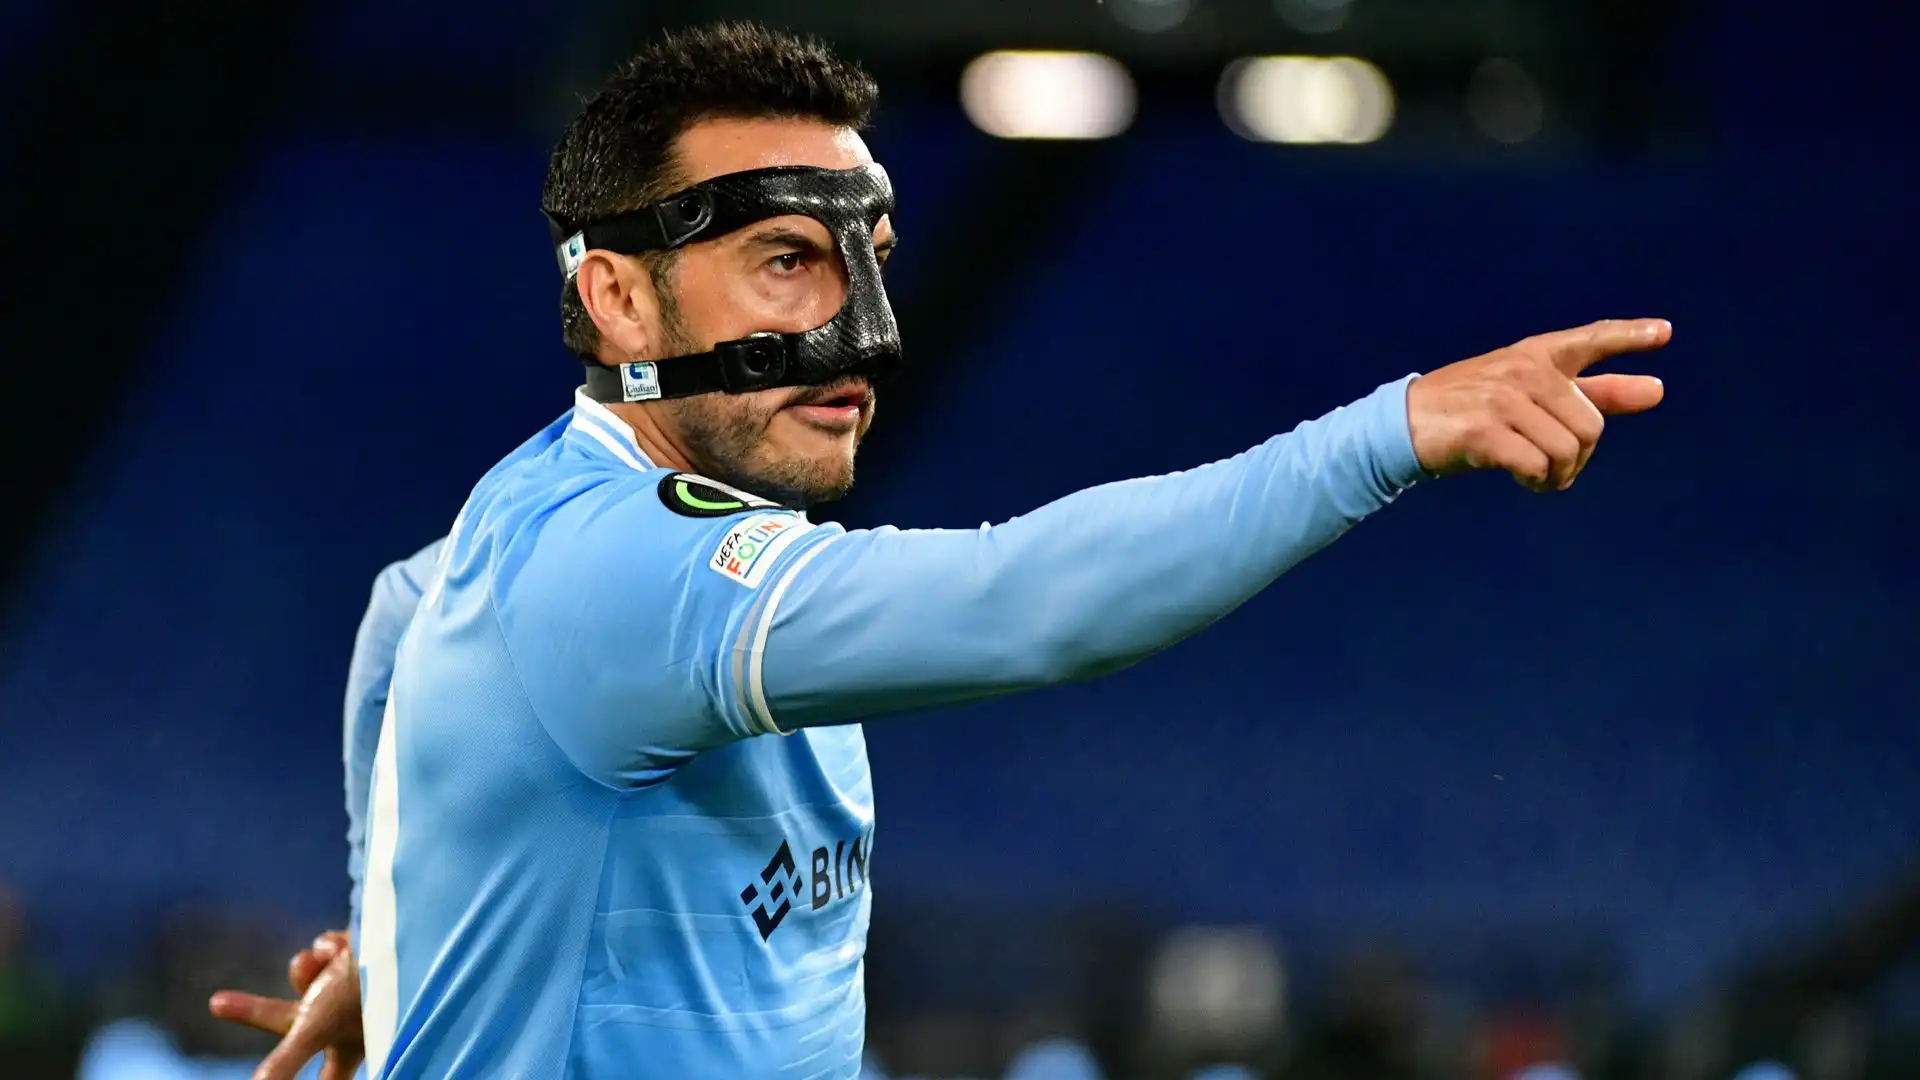 L'esperto calciatore spagnolo ha giocato con una maschera protettiva.